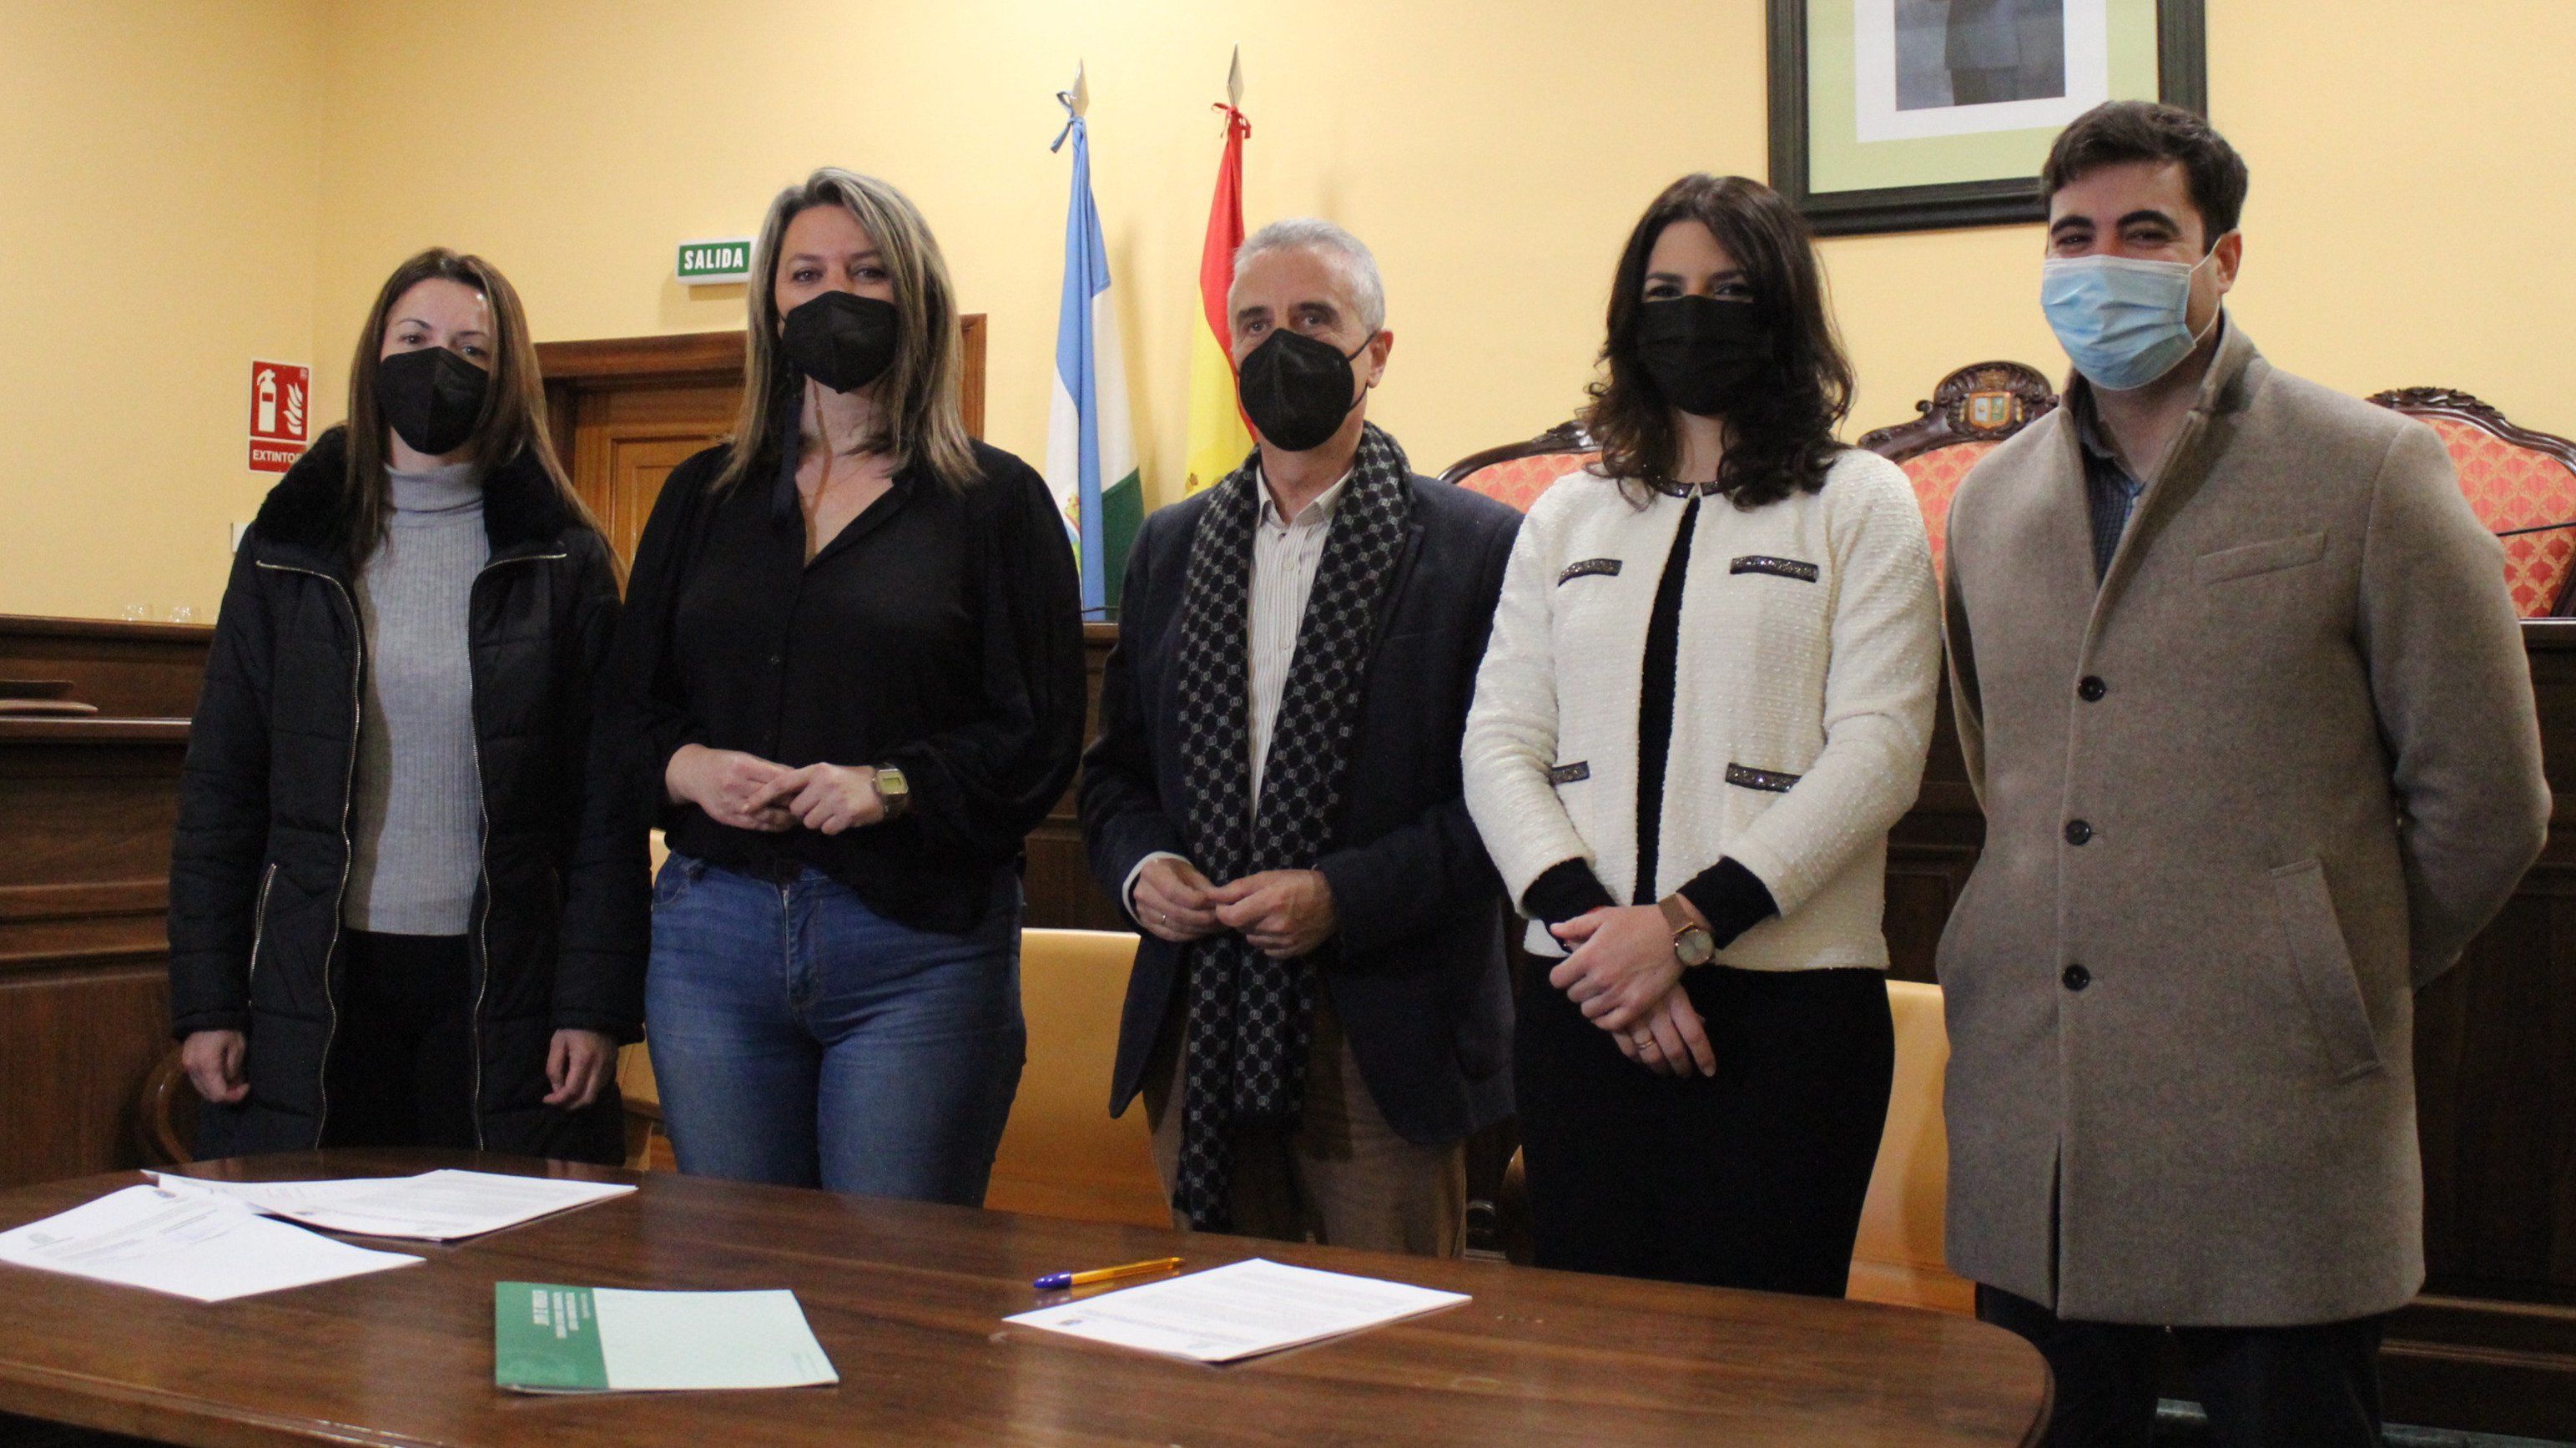  Juan Pérez y Purificación Joyera junto a otros miembros de la corporación municipal durante la rúbrica del documento 